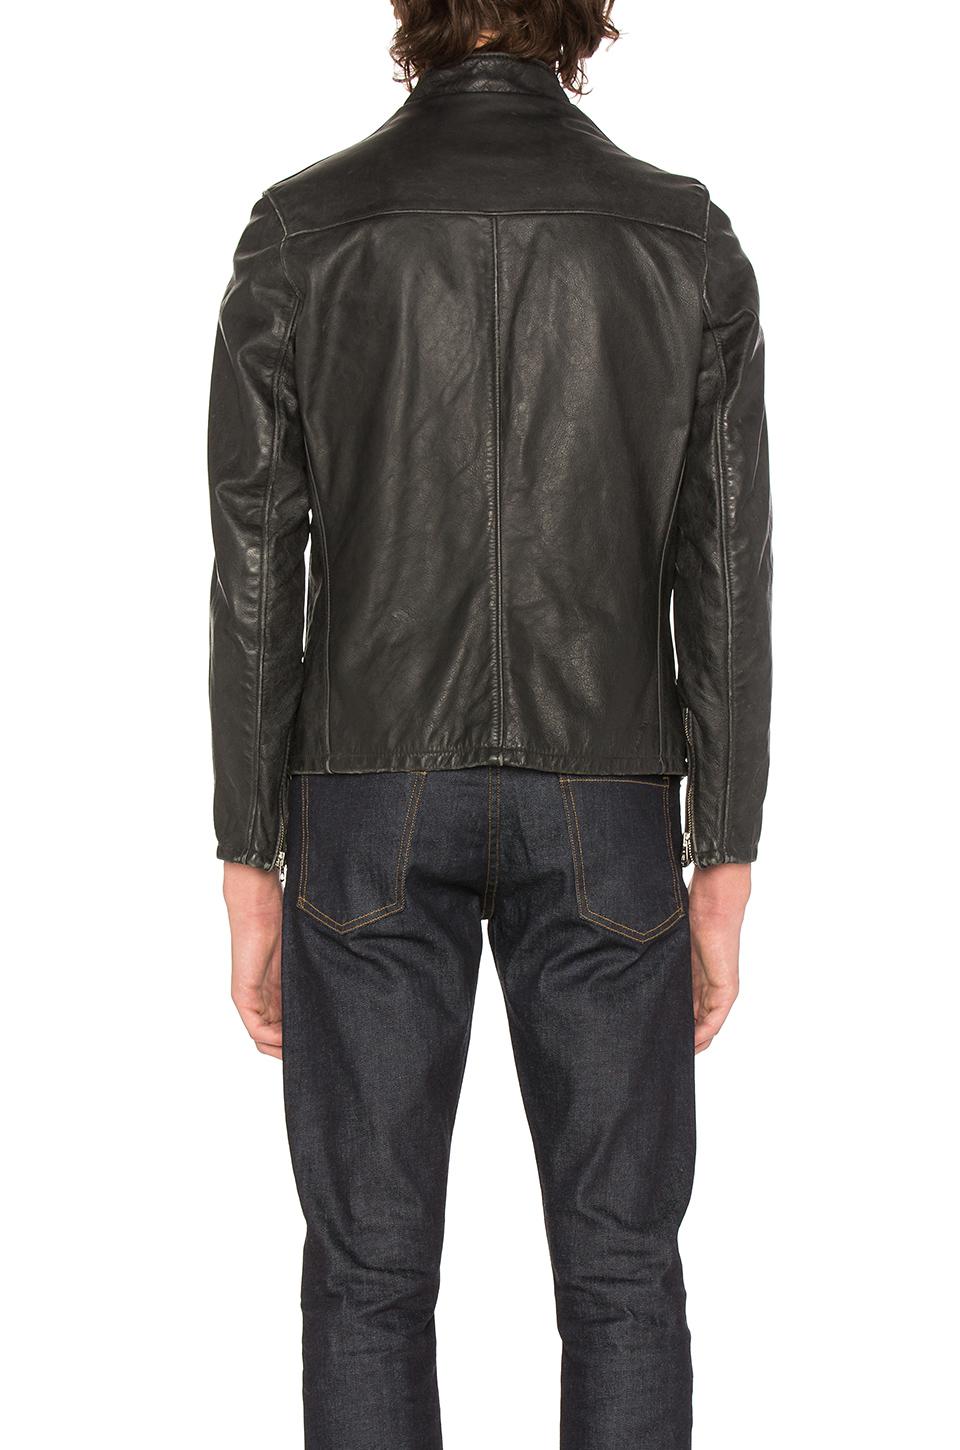 Schott Nyc Leather Vintaged Cafe Moto Jacket in Black for Men - Lyst